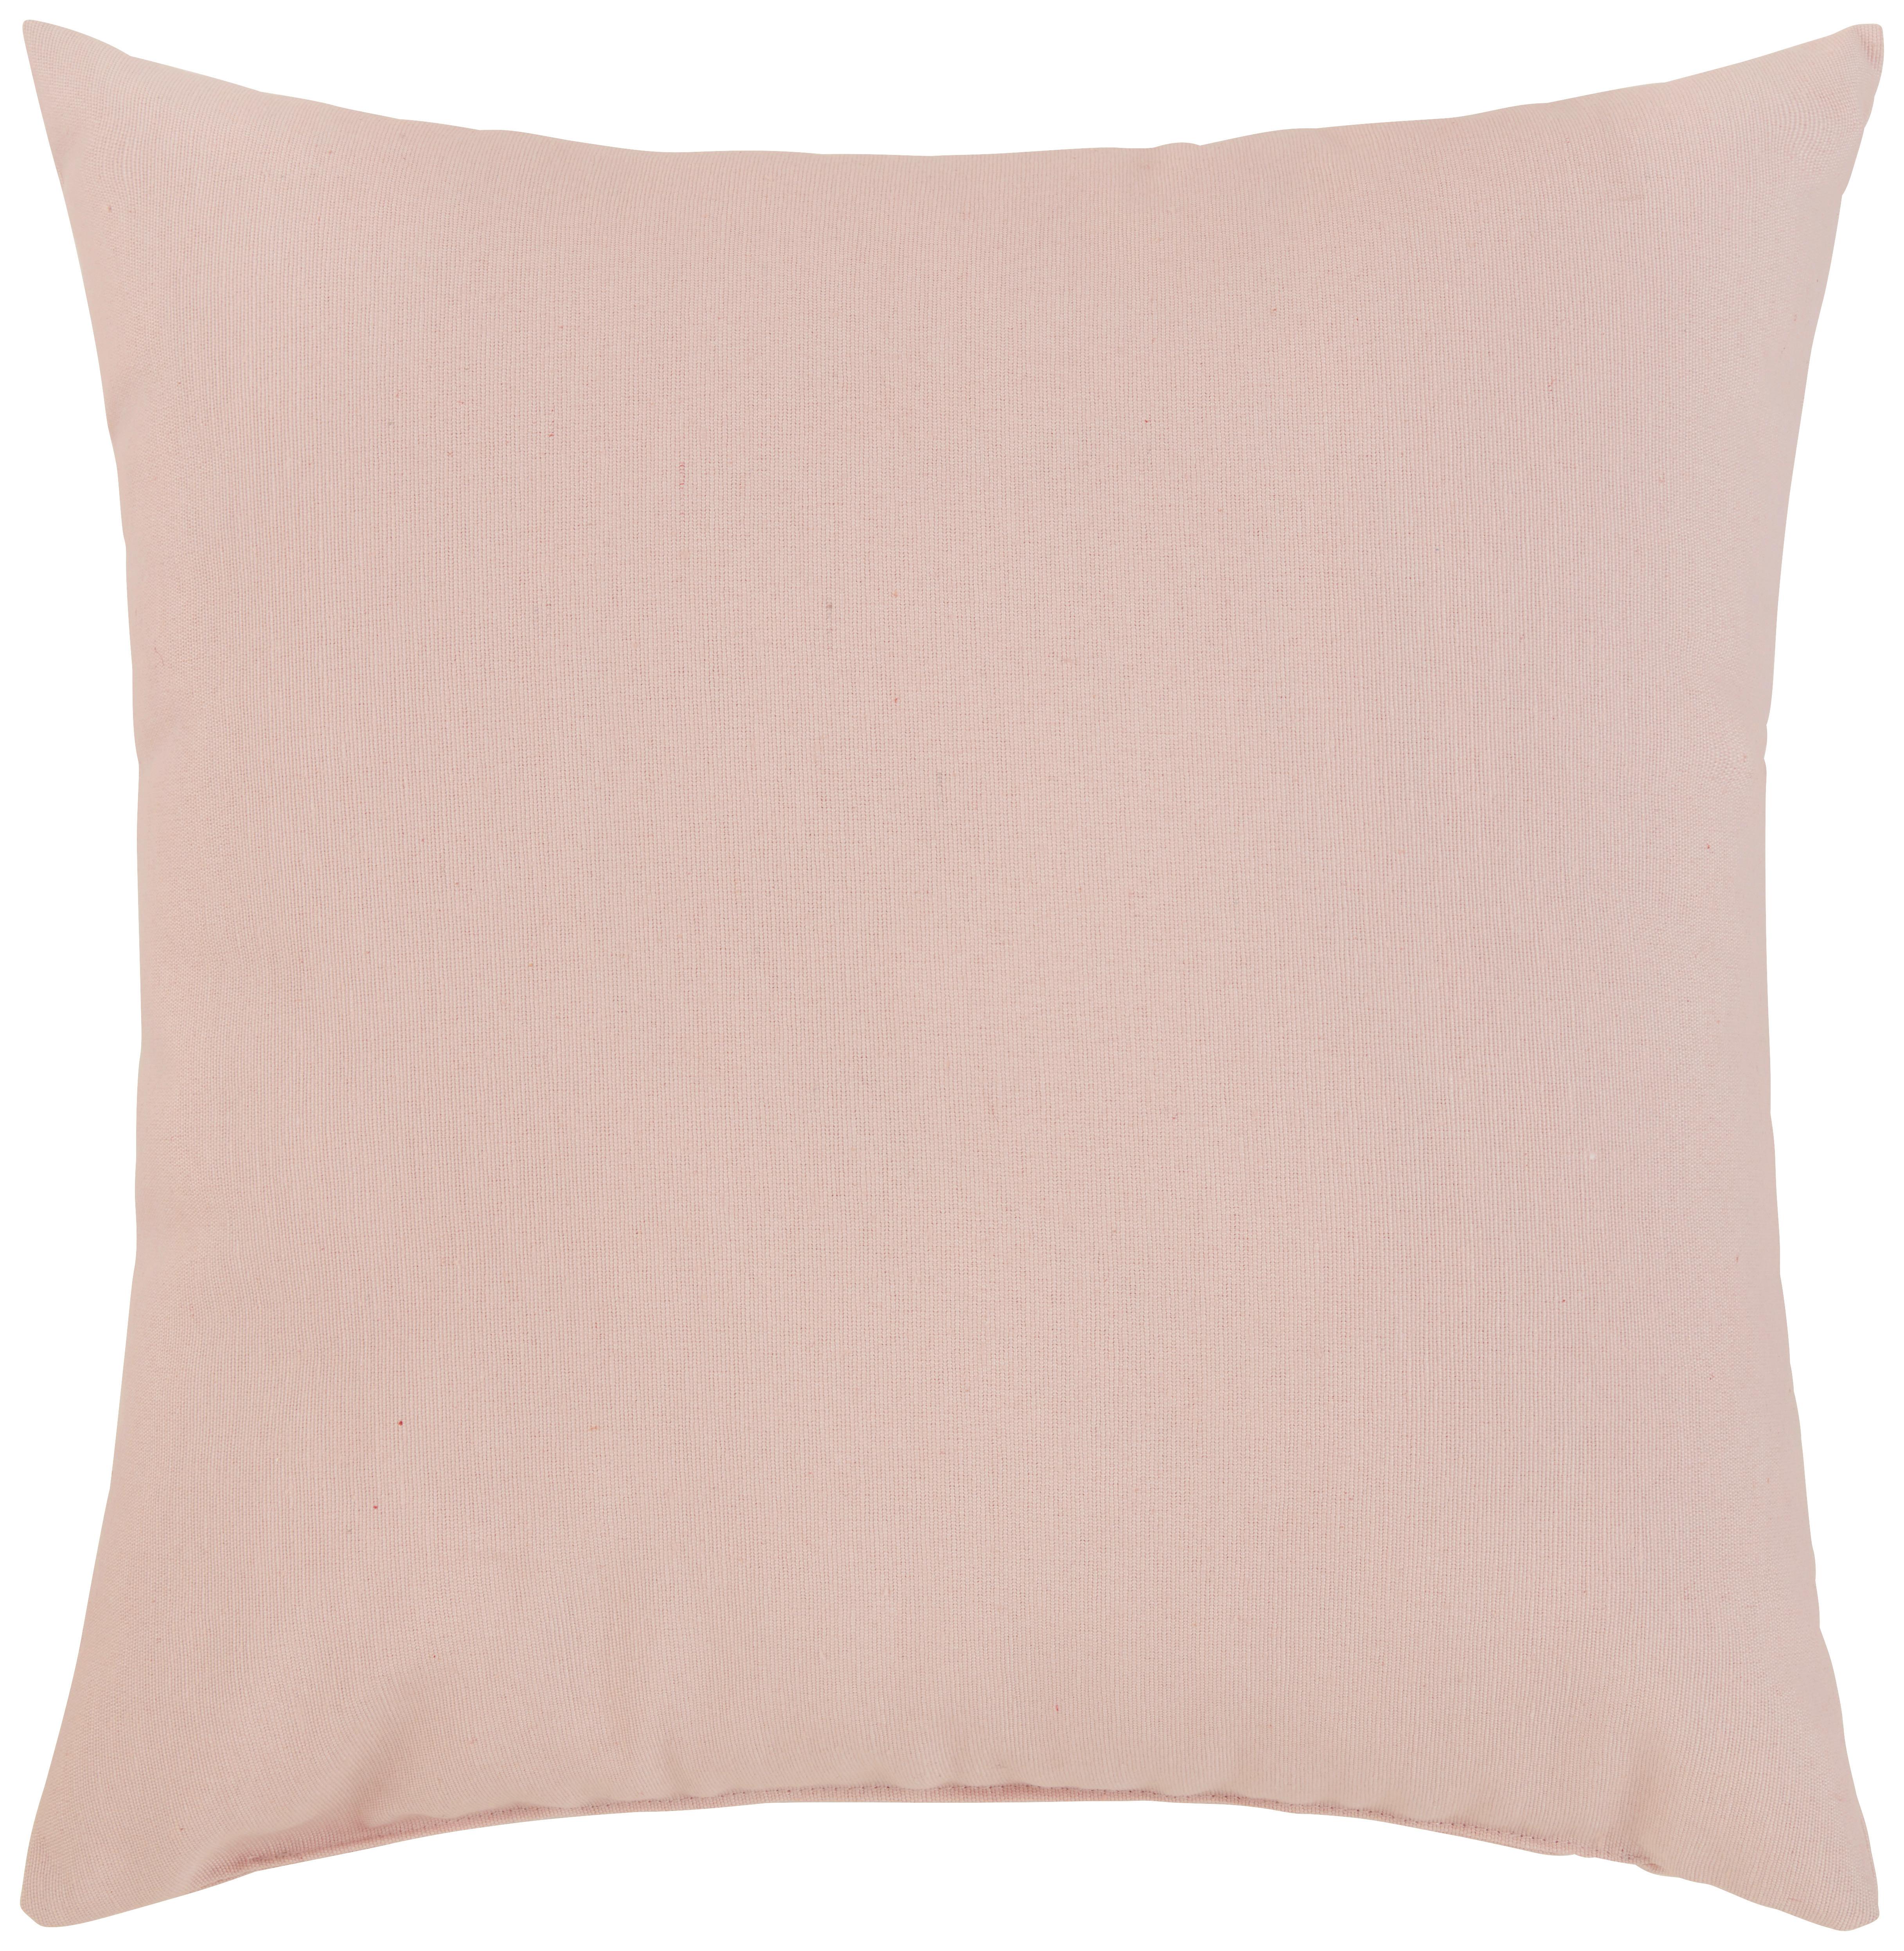 Dekorační Polštář Littlemex, 38/38cm, Růžová - růžová, Konvenční, textil (38/38cm) - Modern Living